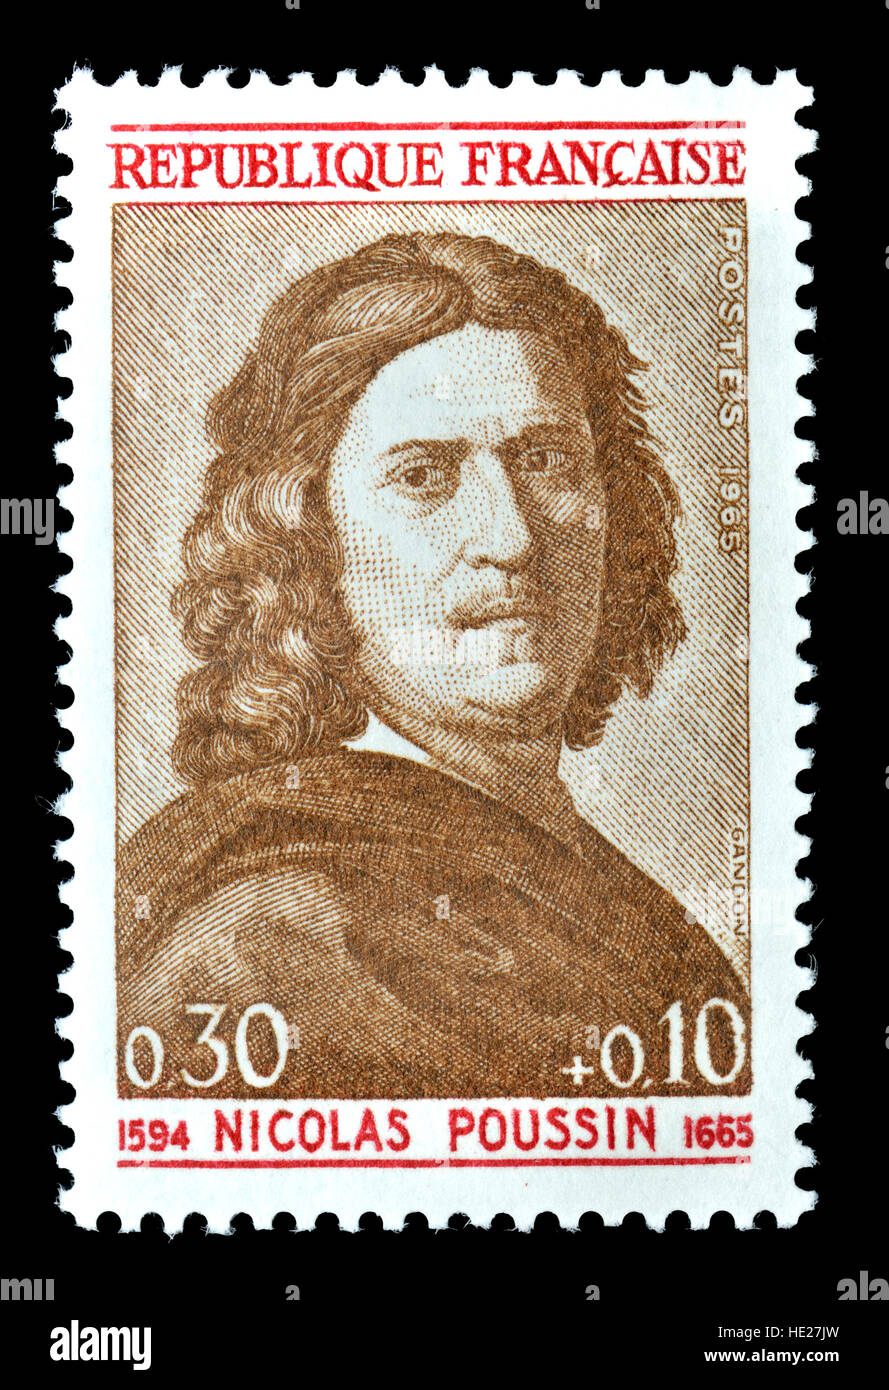 Il francese francobollo (1965) : Nicolas Poussin (1594-1665) Pittore leader del classico stile barocco francese Foto Stock